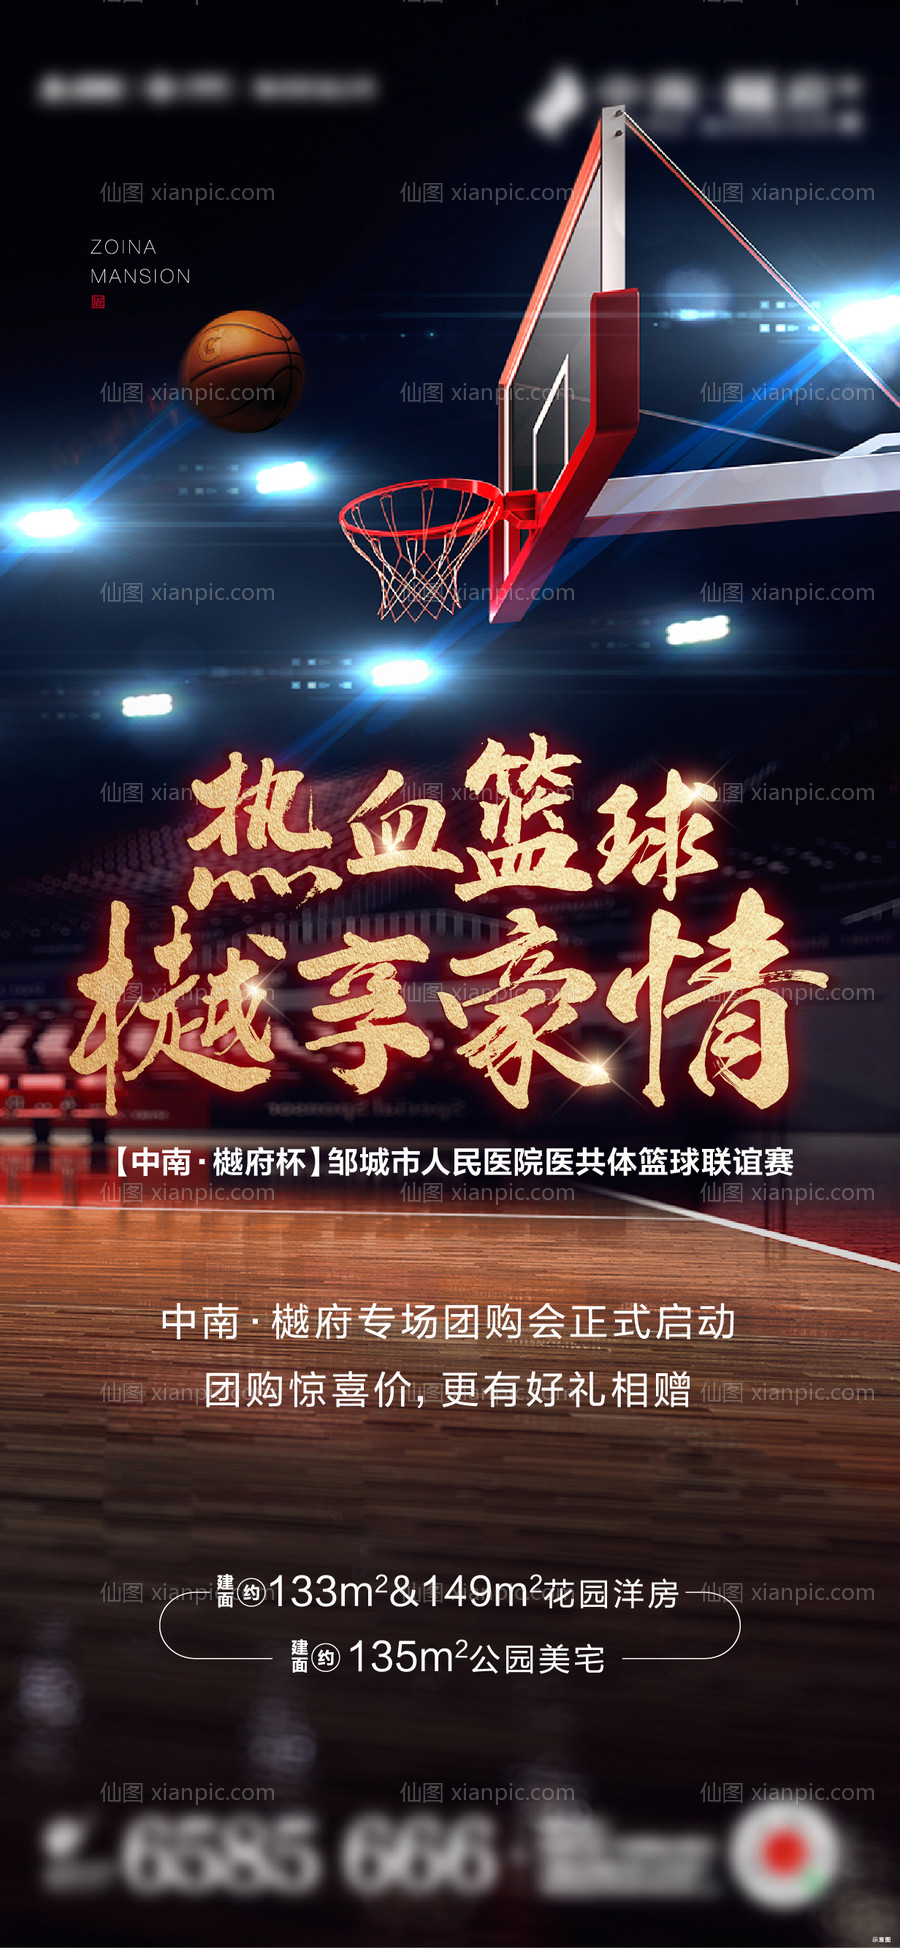 素材乐-篮球比赛活动海报